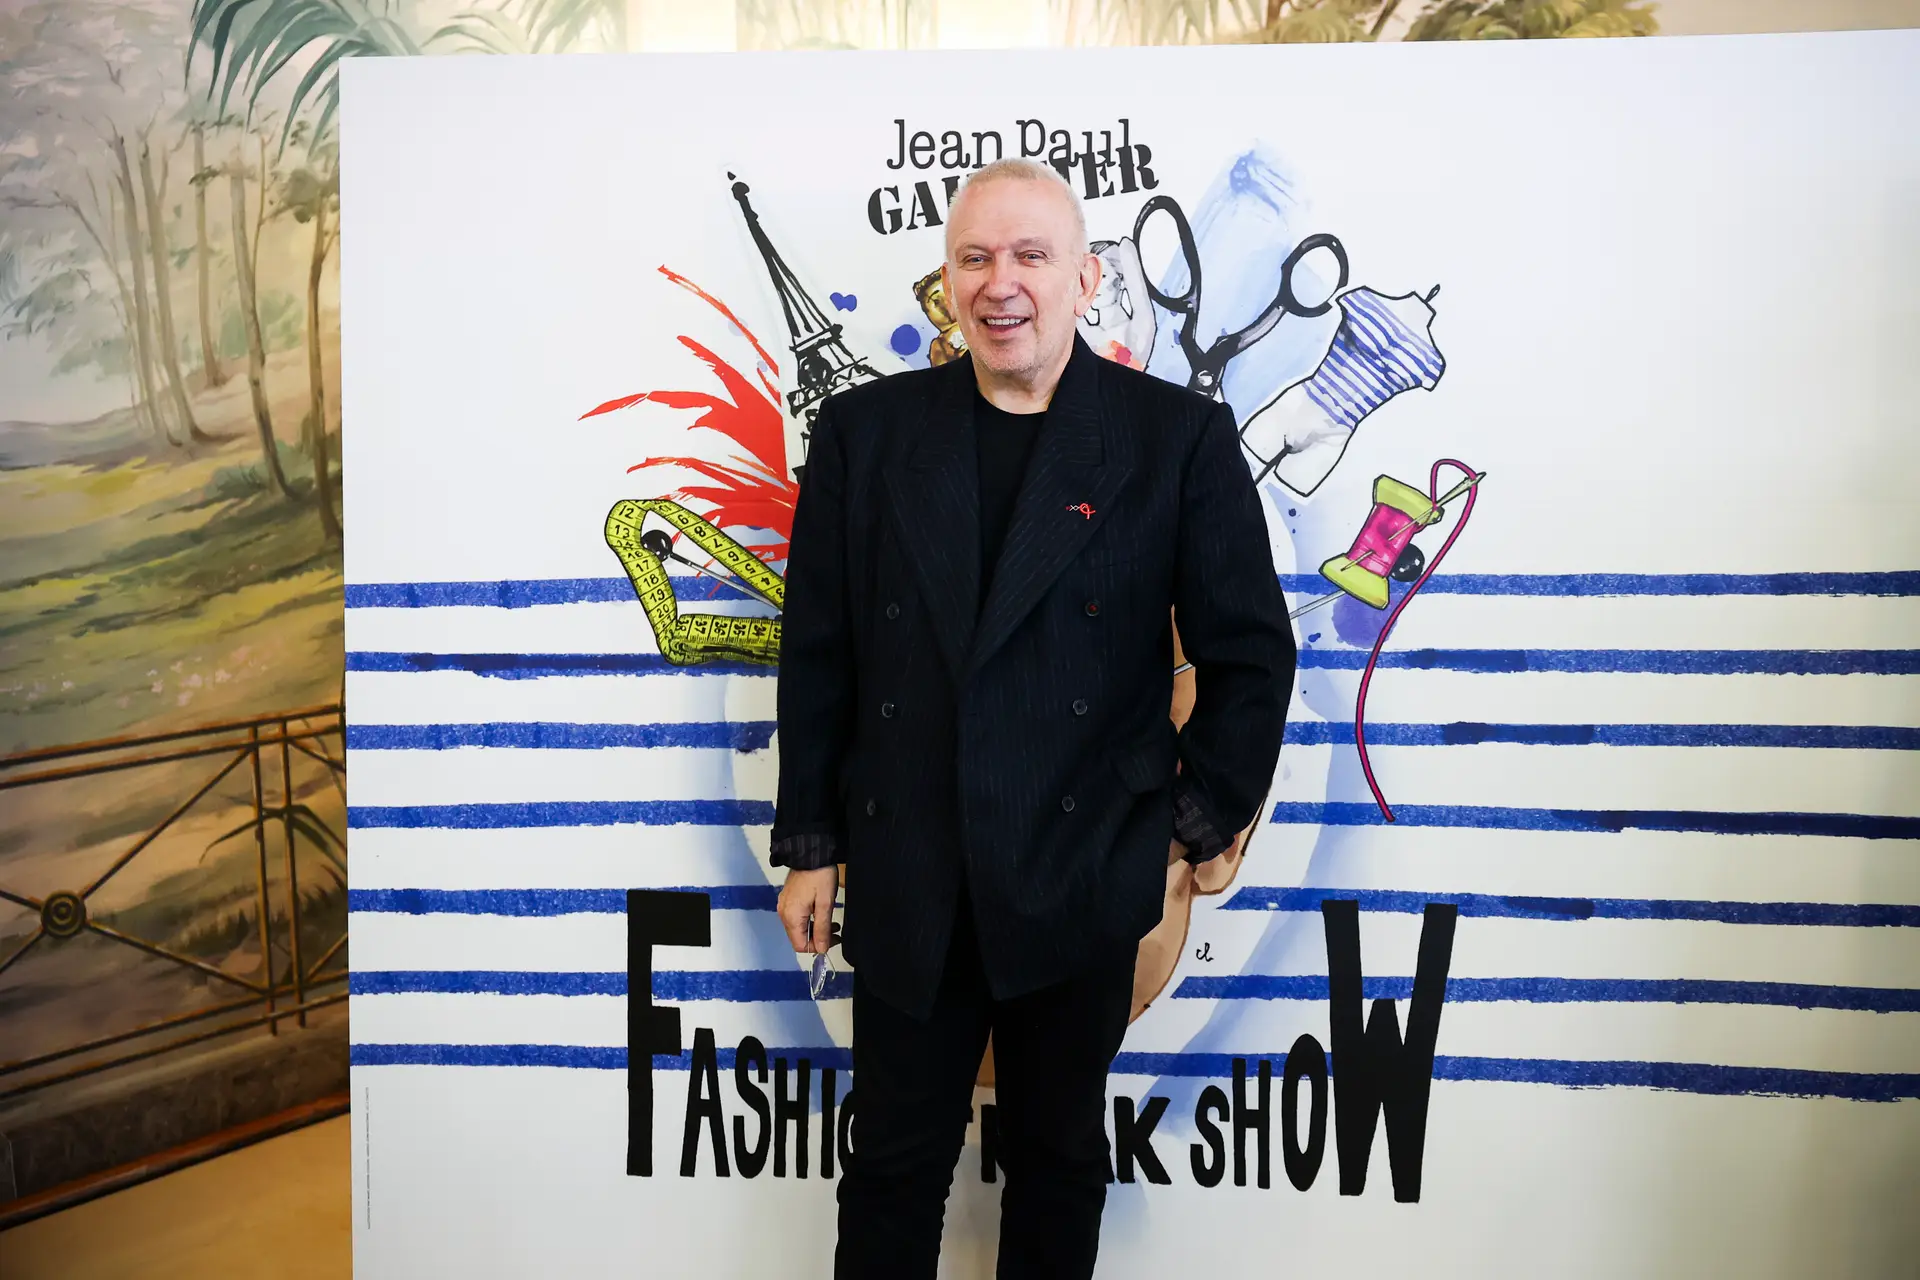 Caras  Jean Paul Gaultier apresenta em Lisboa um espetáculo que